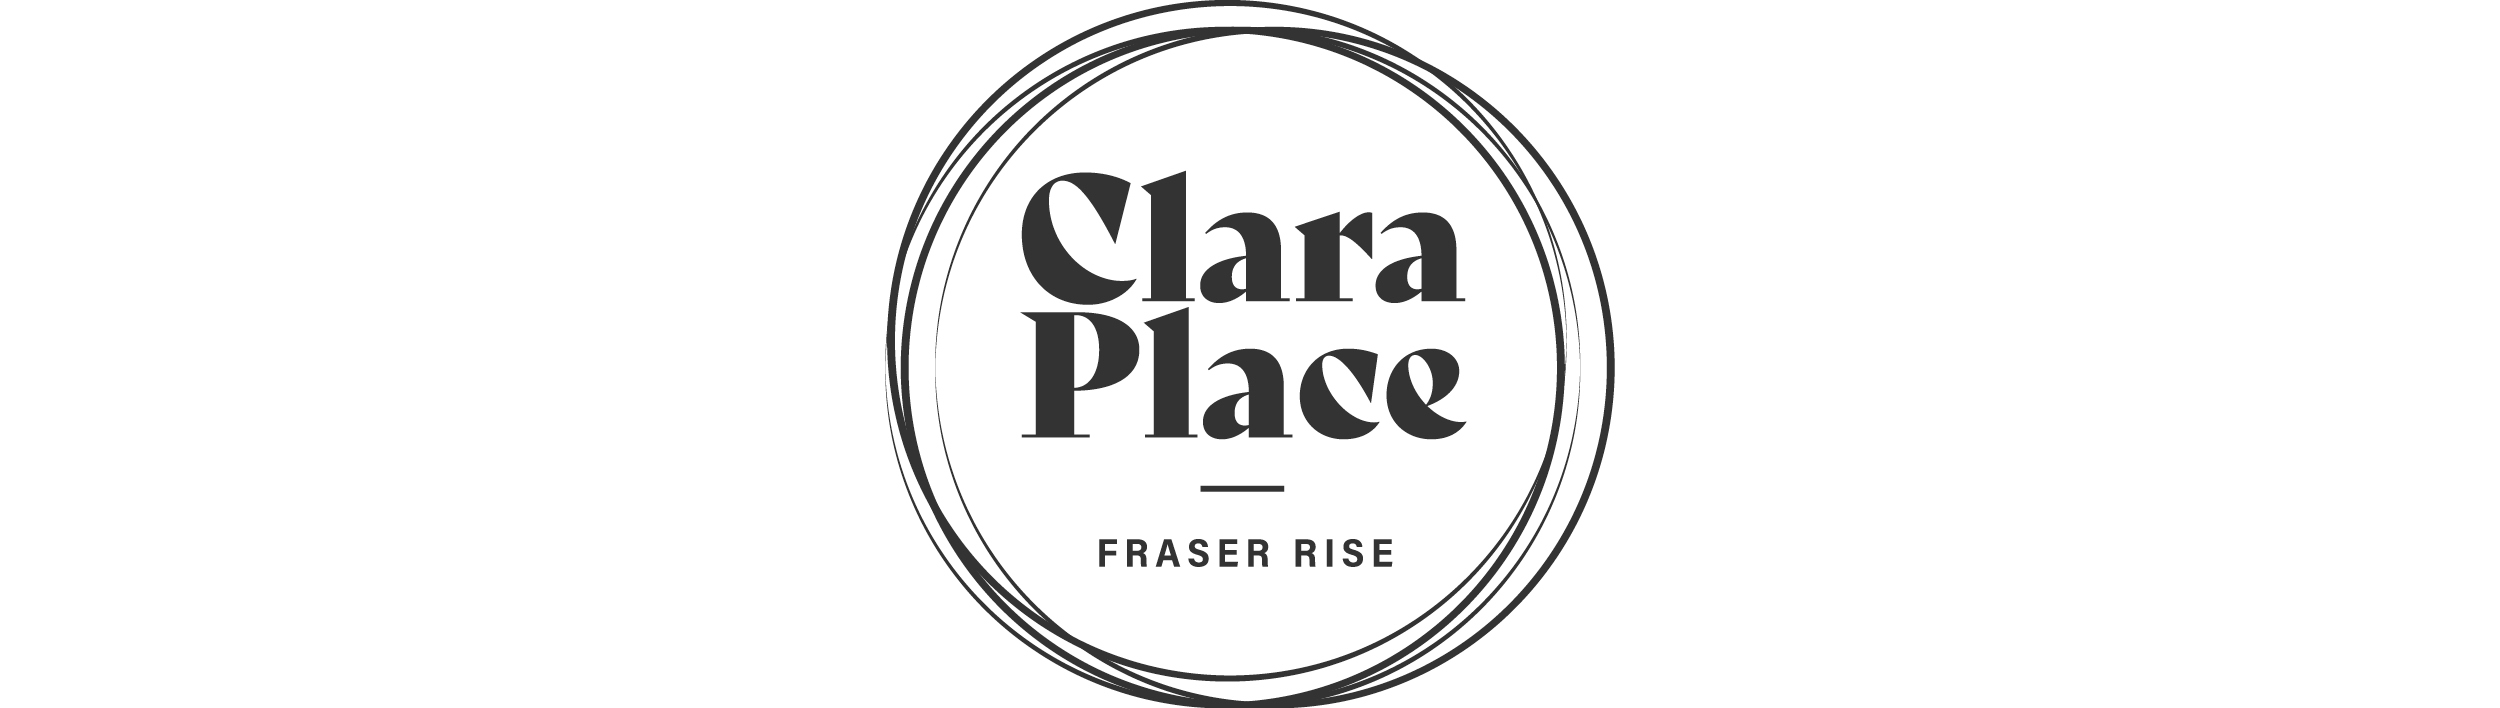 Clara Place Grey Logo